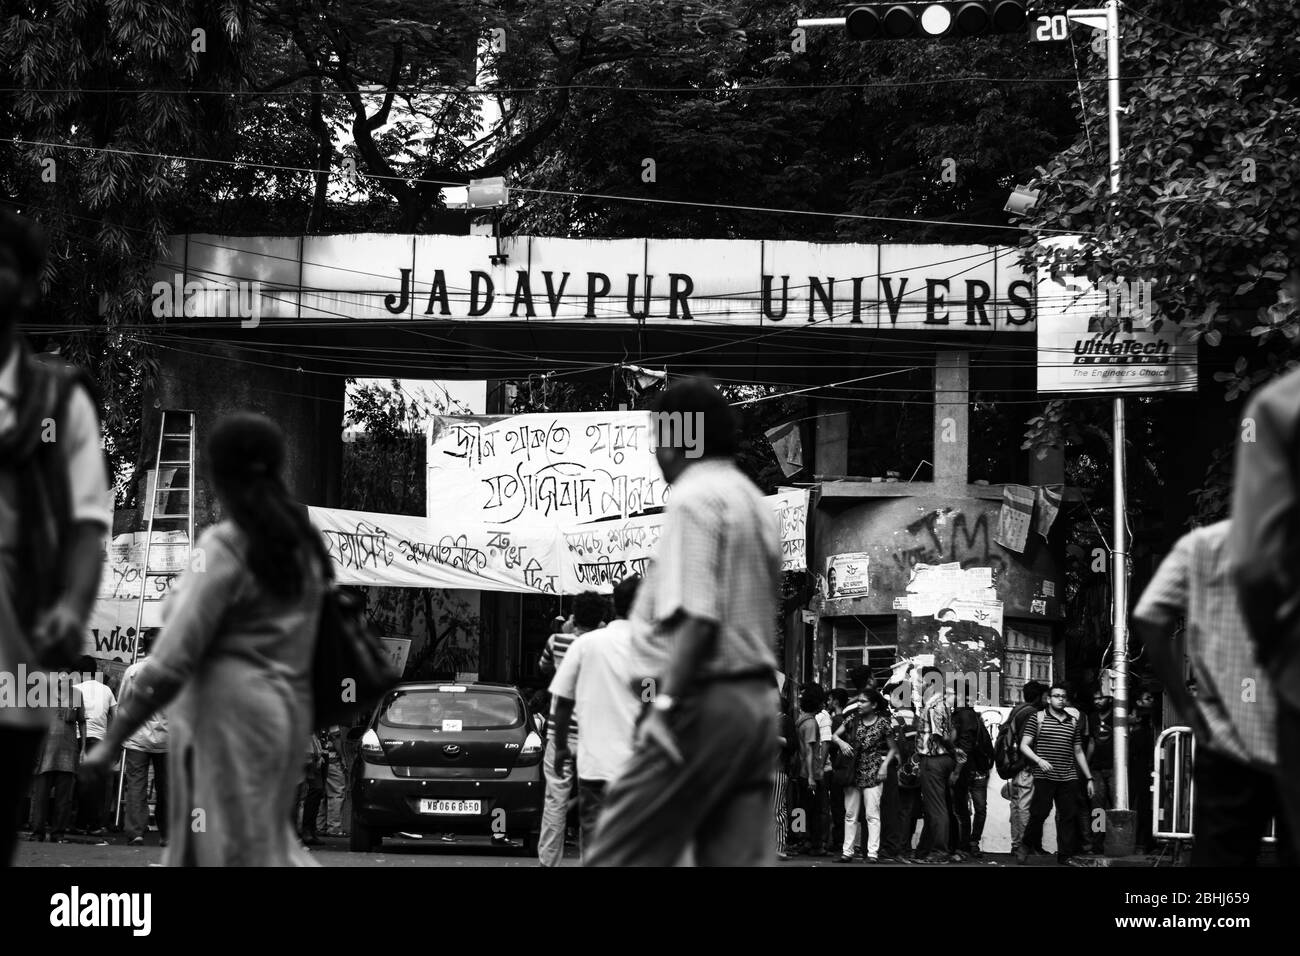 ABVP qui est une unité étudiante de RSS a essayé de vandaliser l'Université Jadavpur aujourd'hui. Banque D'Images